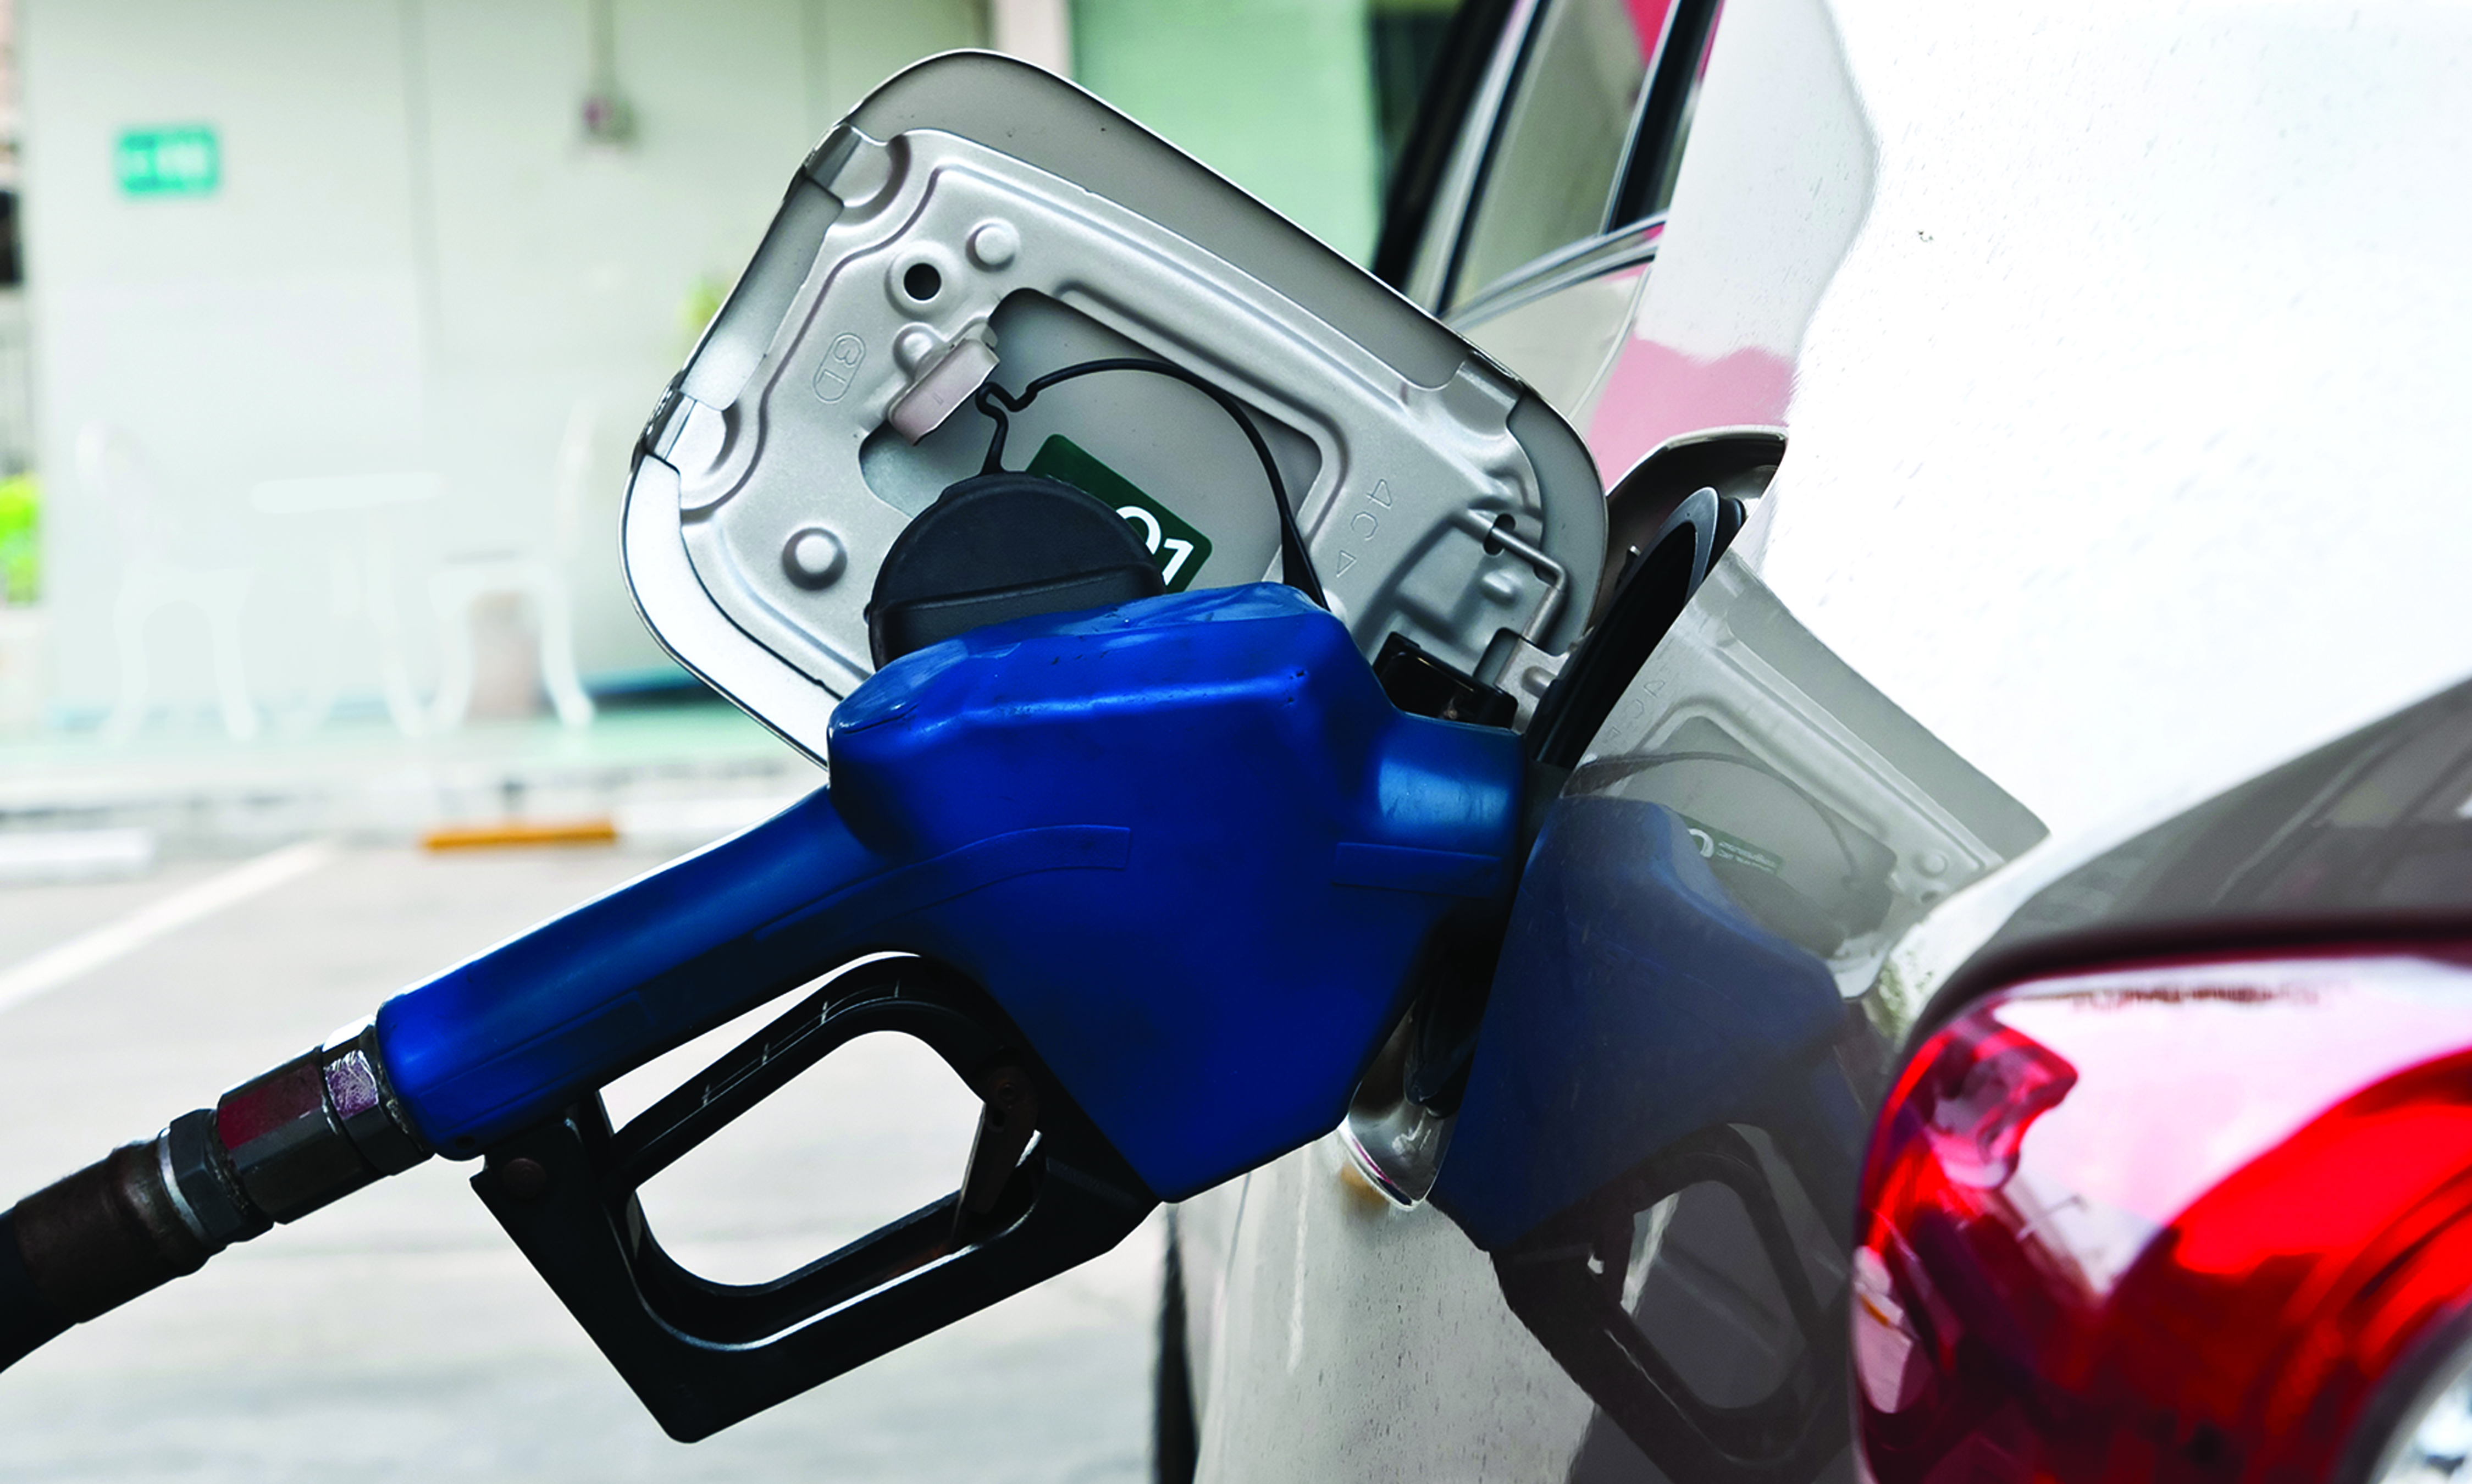 بنزین موردنیاز کشور از پالایشگاههای داخلی و واردات یورو ٤ تامین می شود